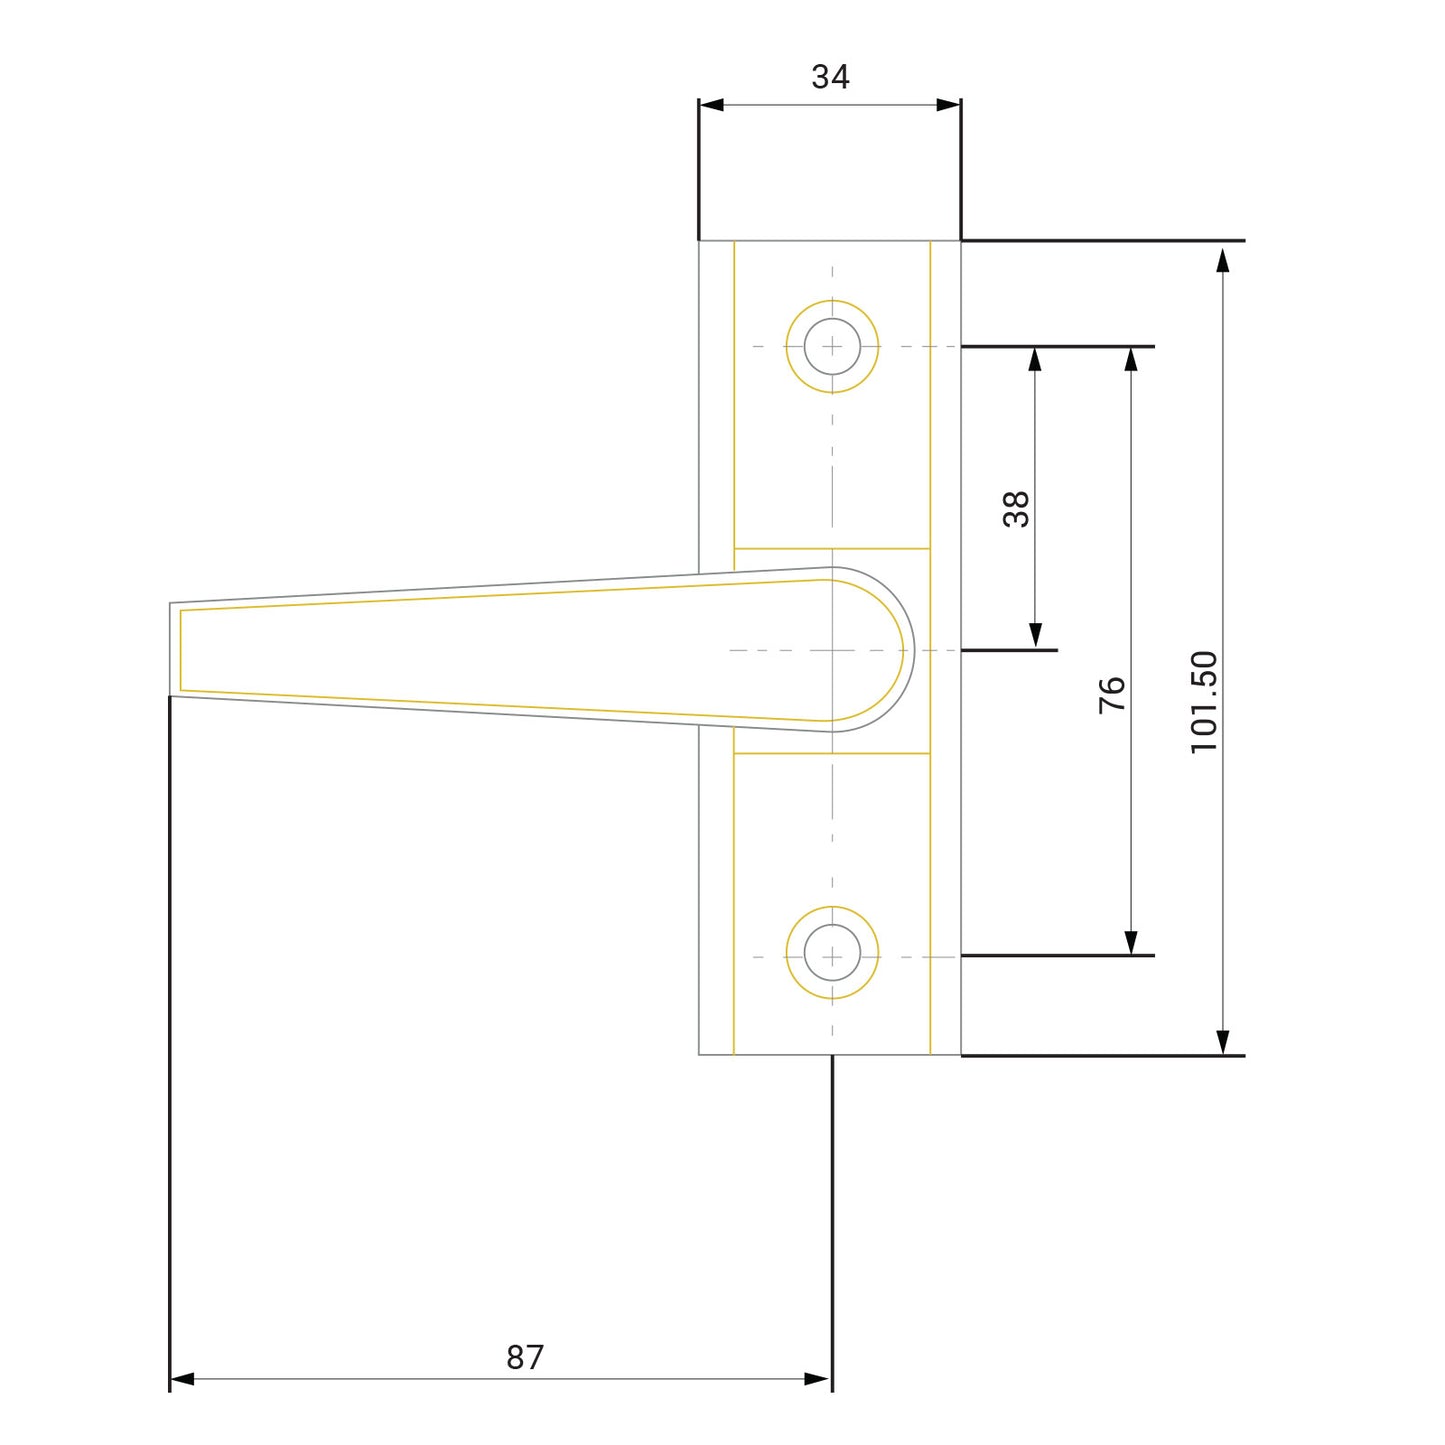 Adams Rite Type / Alpro Lever Handle for Commercial Aluminium Door - SAA